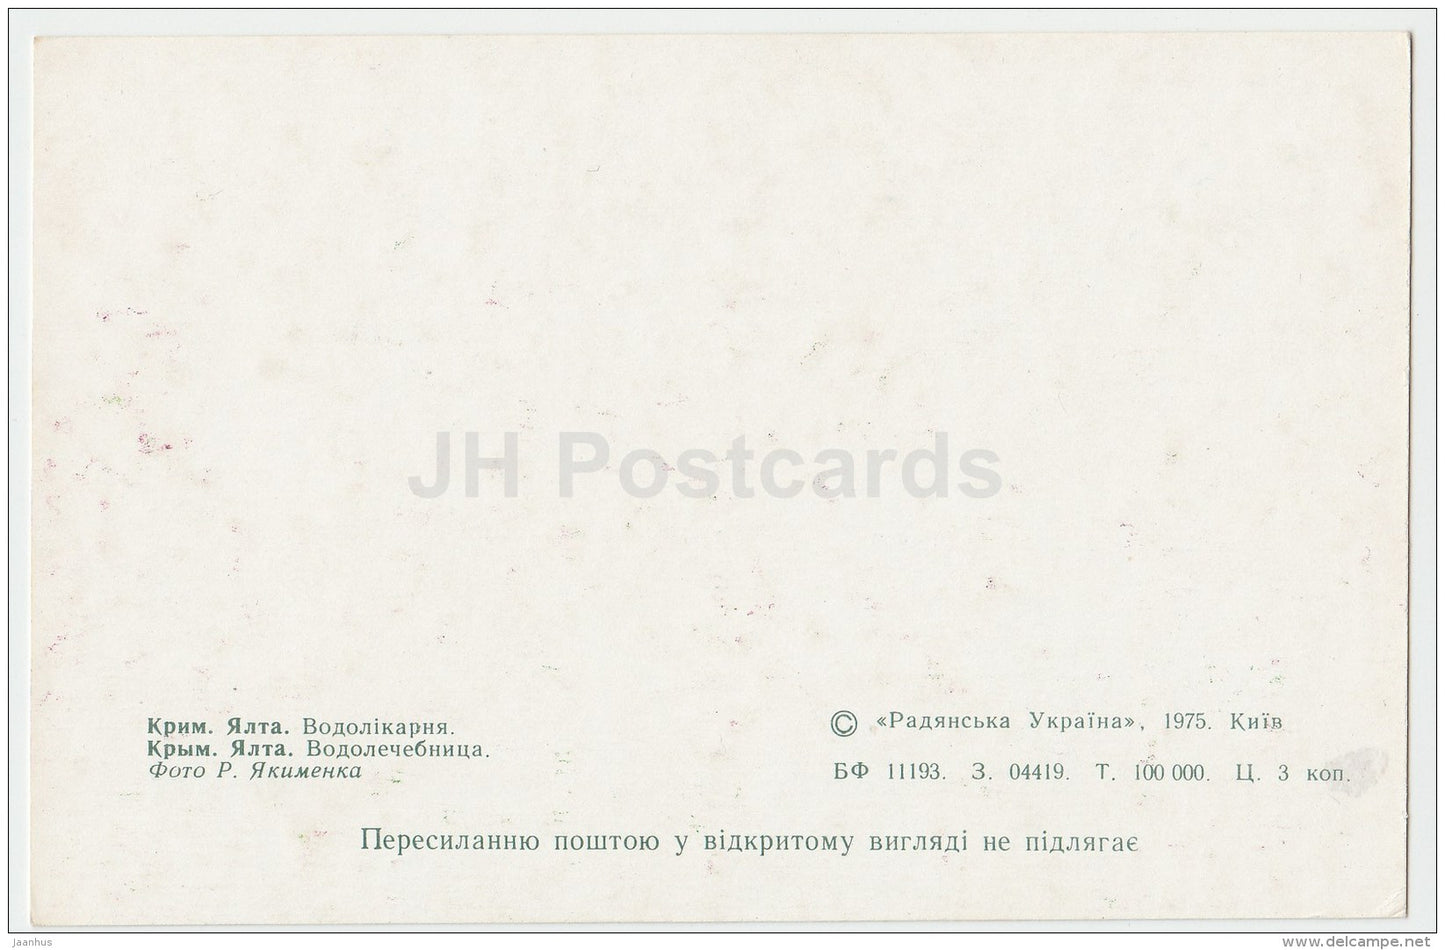 Balneary - Yalta - Crimea - 1975 - Ukraine USSR - unused - JH Postcards